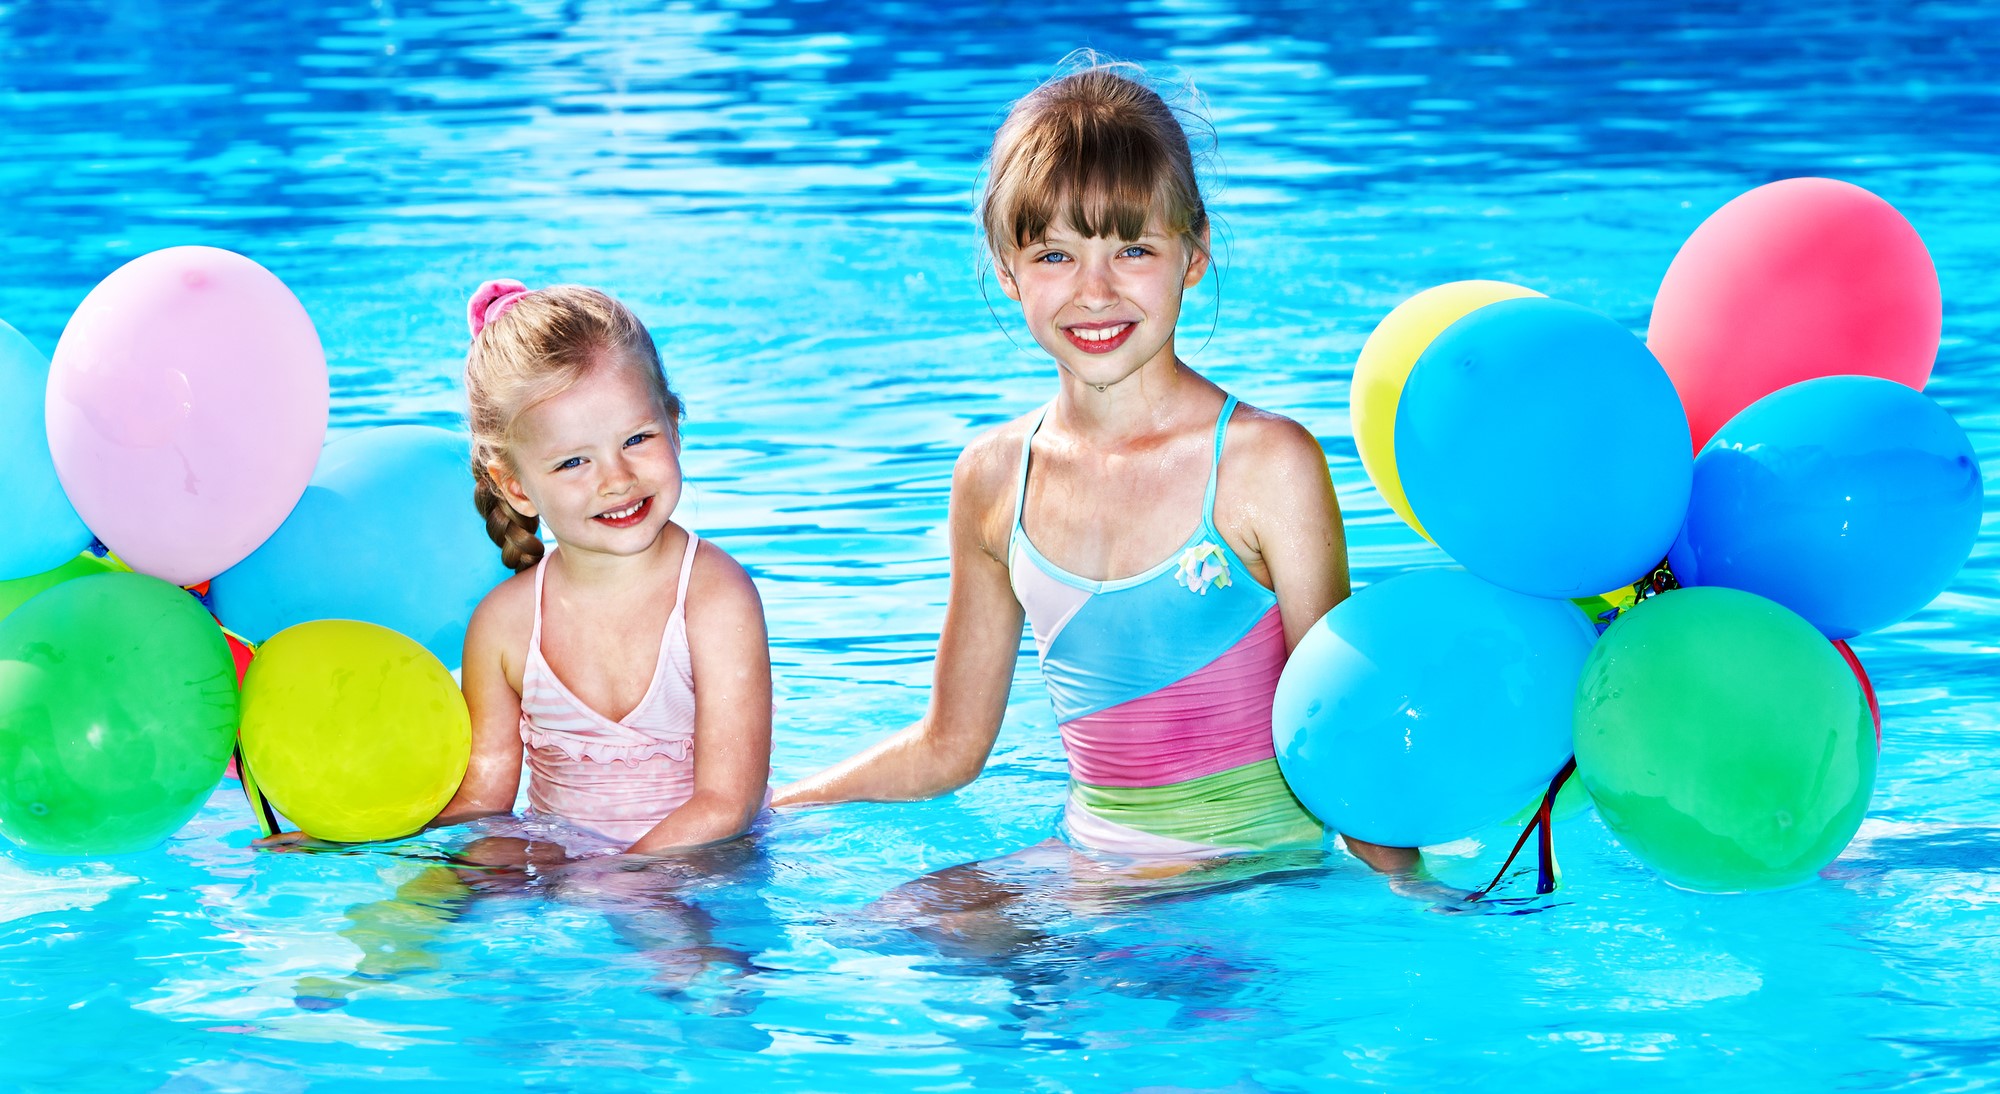 Cómo celebrar una fiesta infantil segura en la piscina